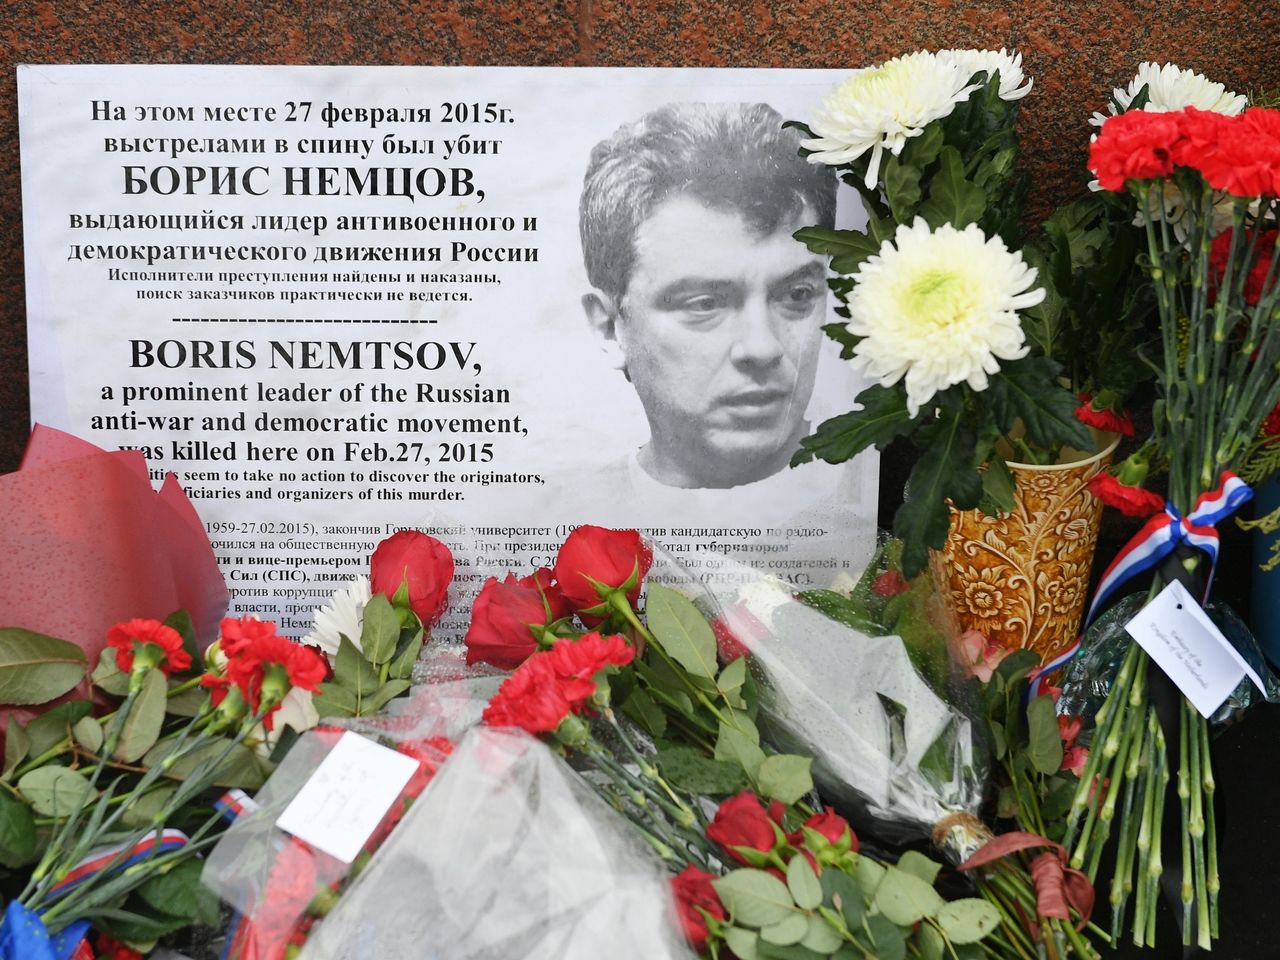 Гончаренко эффектно напомнил всем о дне рождения Немцова, упомянув Путина